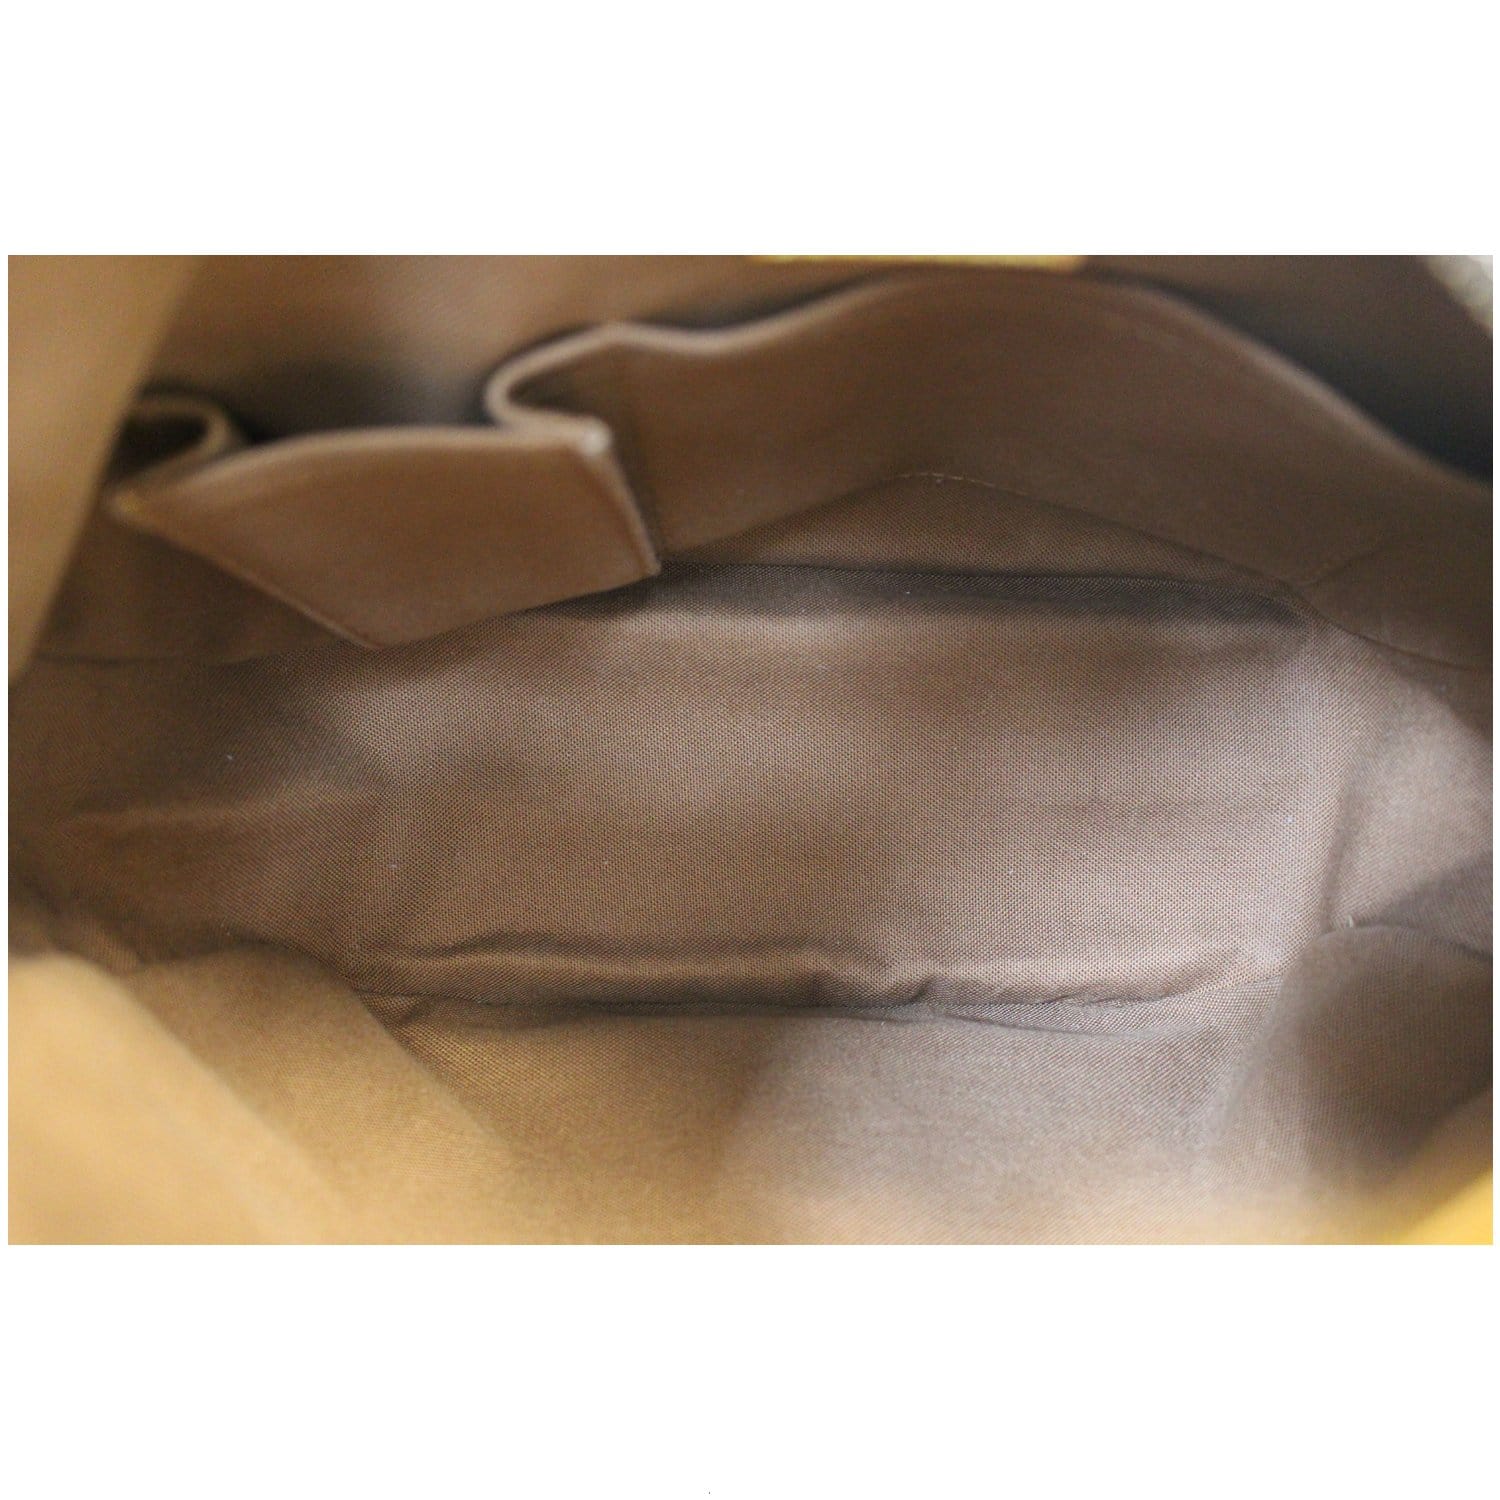 Authentic Louis Vuitton Tulum PM Shoulder bag brown #17188